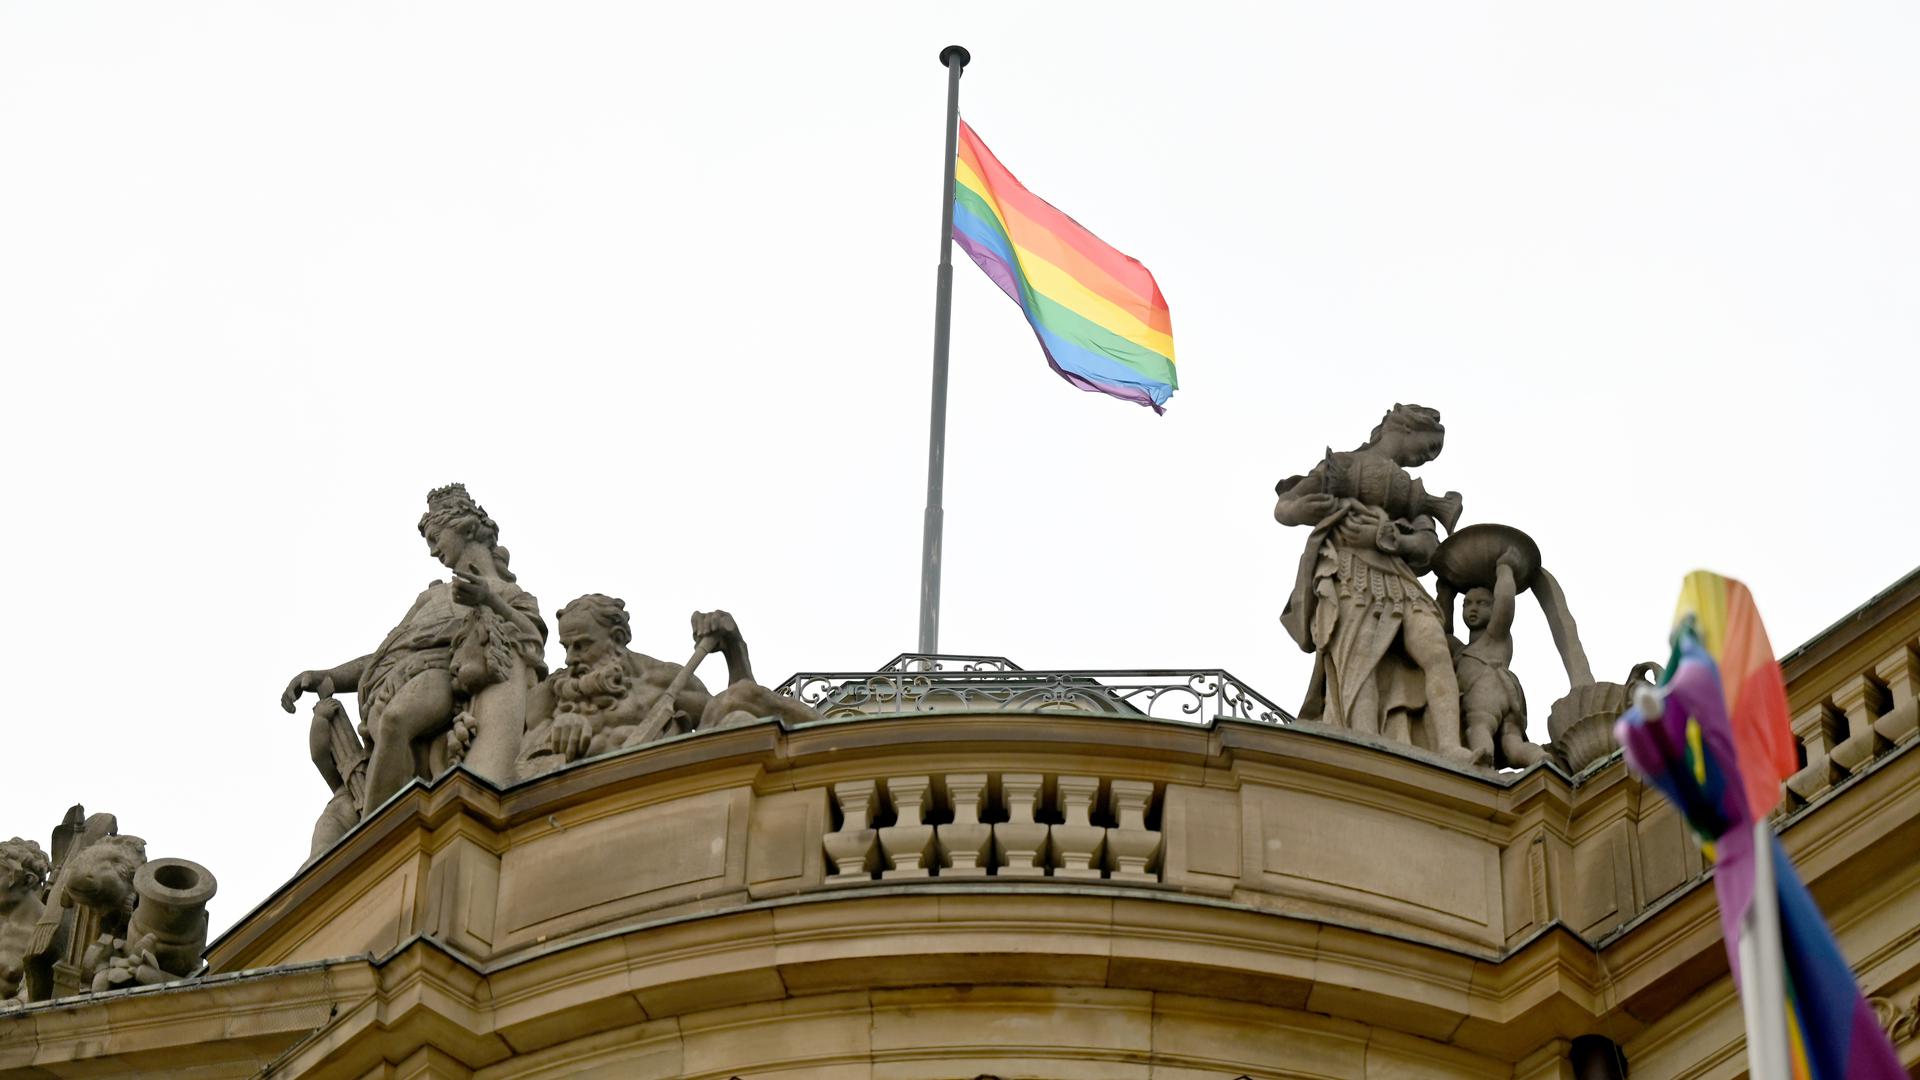 Ein Symbol für Vielfalt: Die Grünen im Land wollen mehr Gleichberechtigung. Das Bild zeigt eine Regenbogenfahne über dem Neuen Schloss in Stuttgart.